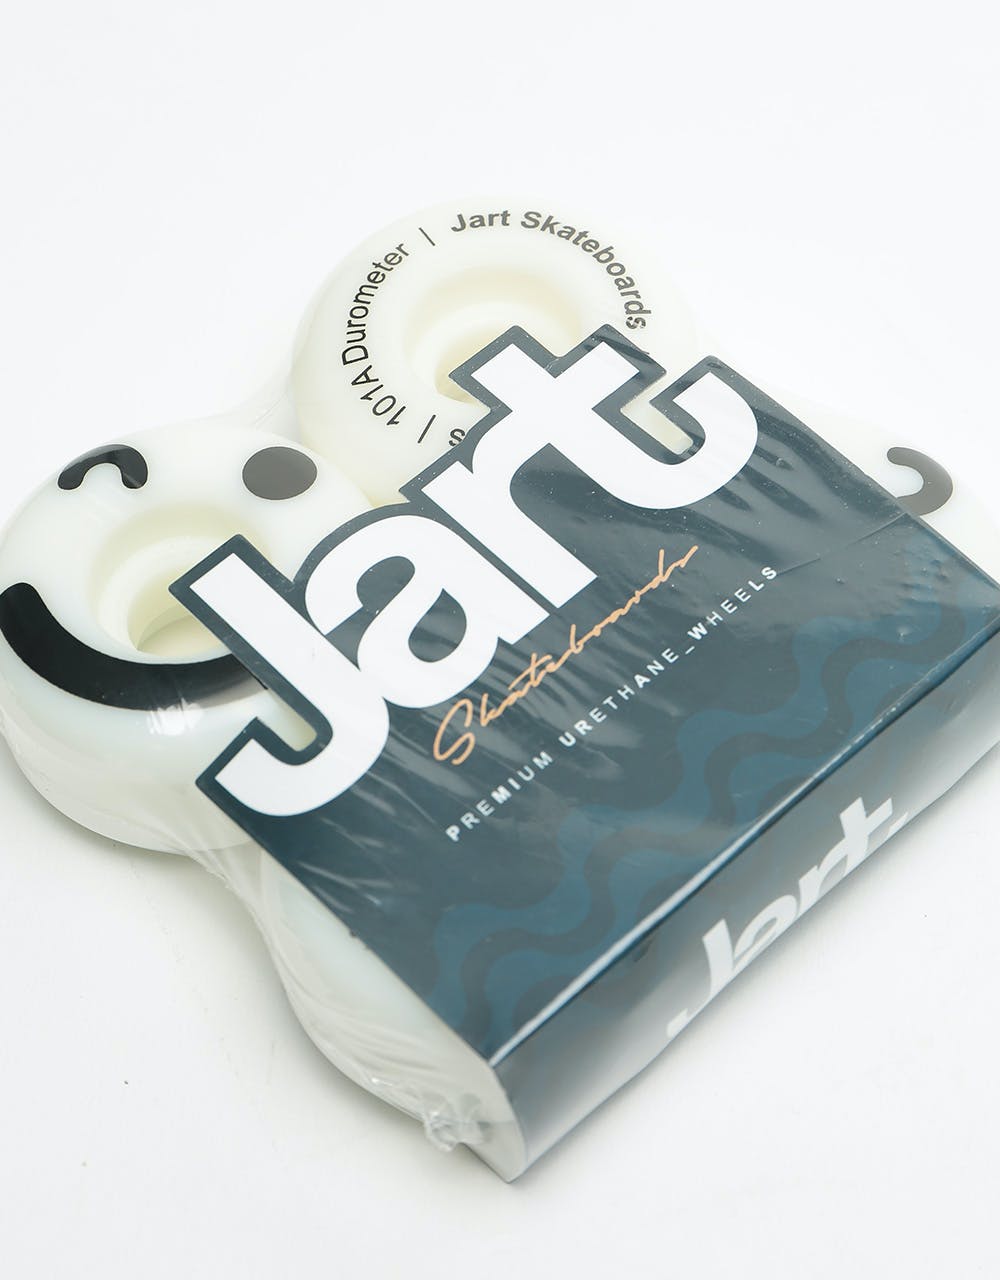 Jart Be Happy 102a Skateboard Wheel - 50mm